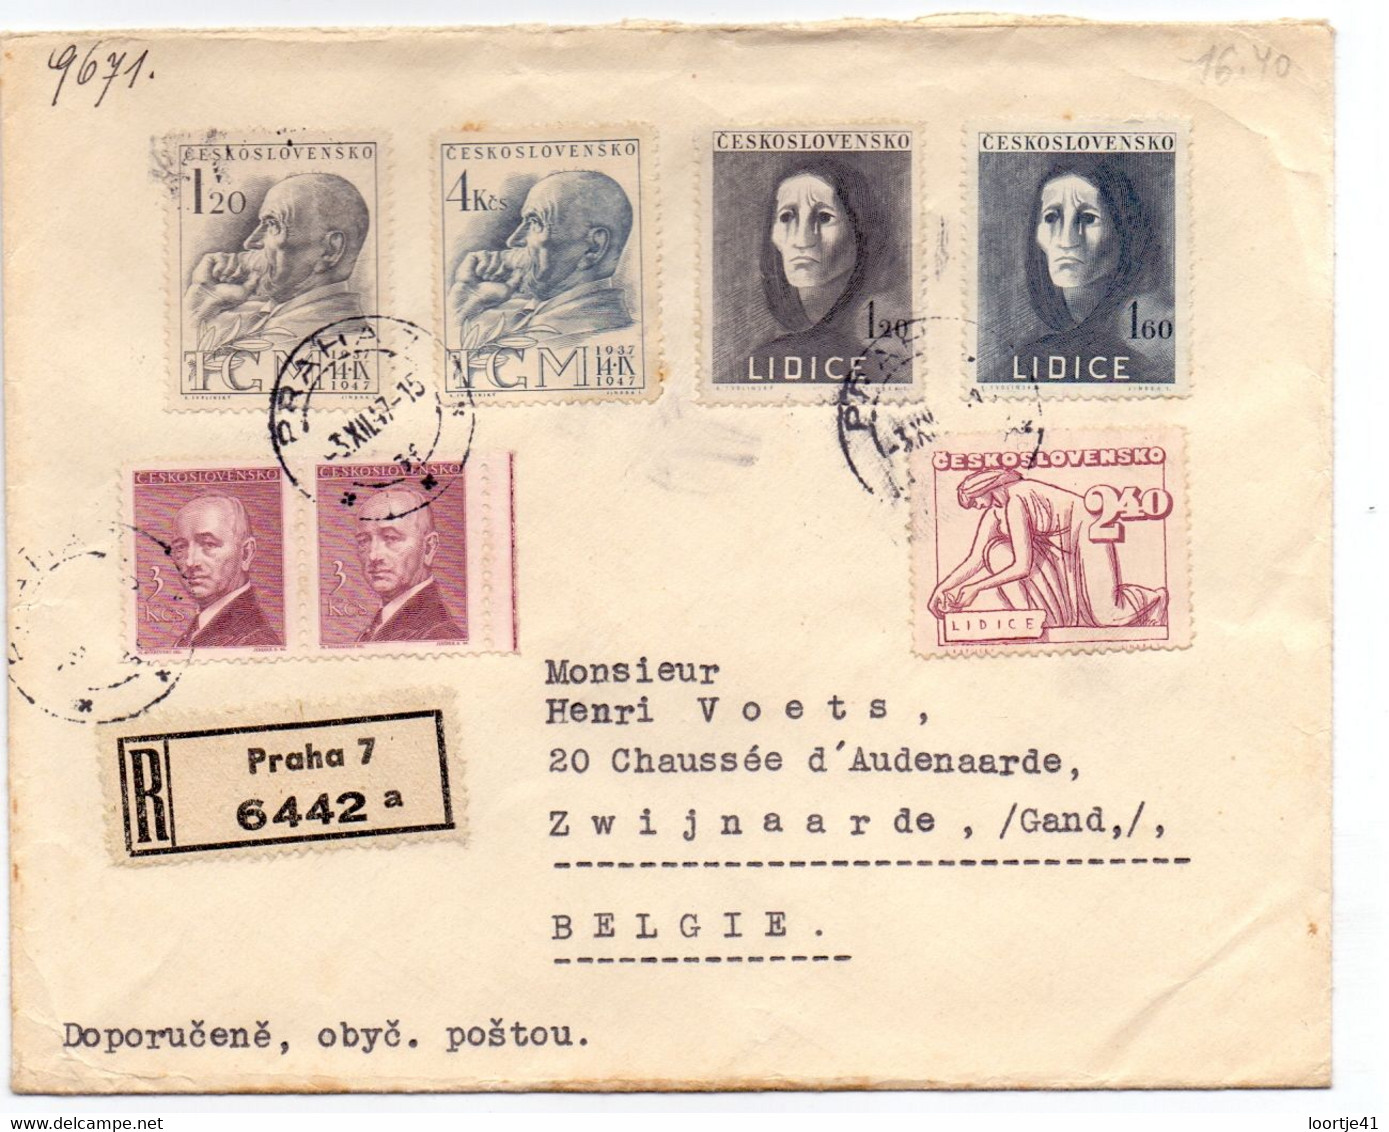 Omslag Enveloppe - Praha Ceskoslovensko Naar Gand Gent - Recommandé Stempel Cachet 1947 - Enveloppes